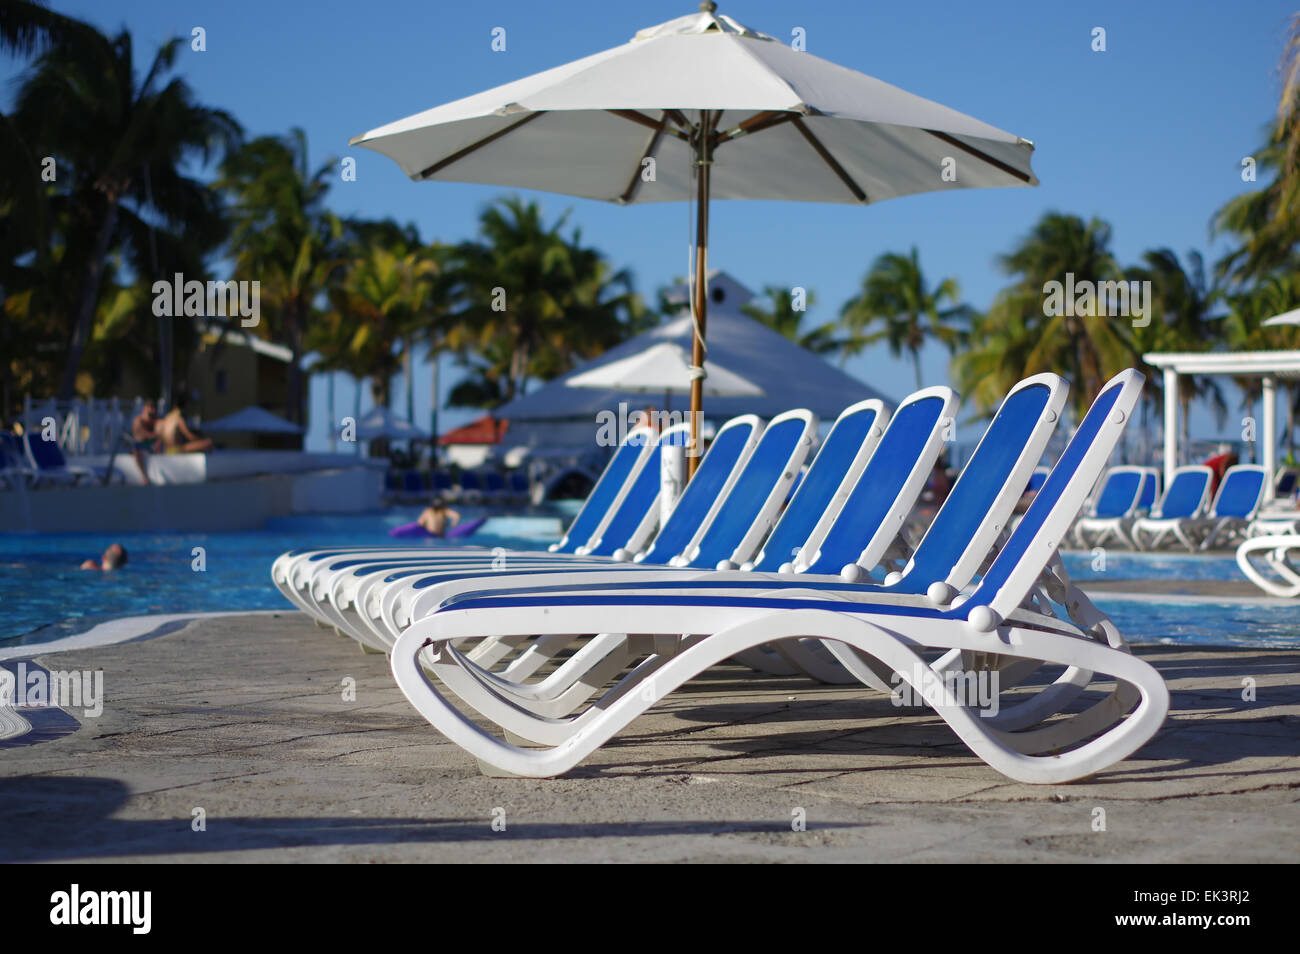 Chaises de salon autour d'une piscine d''un tropical resort Banque D'Images